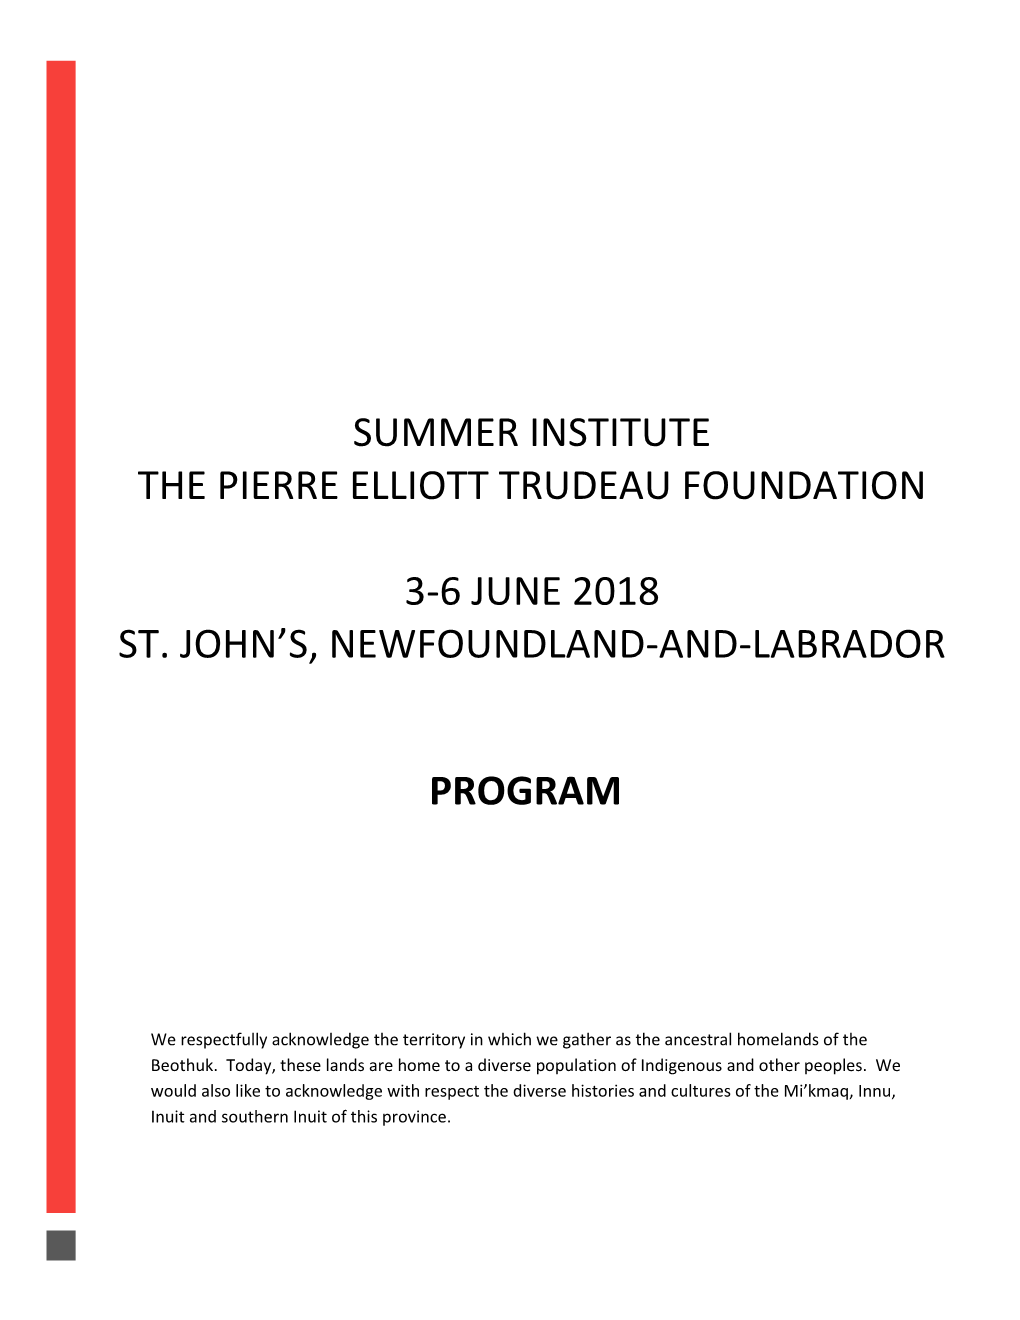 Program Summer Institute the Pierre Elliott Trudeau